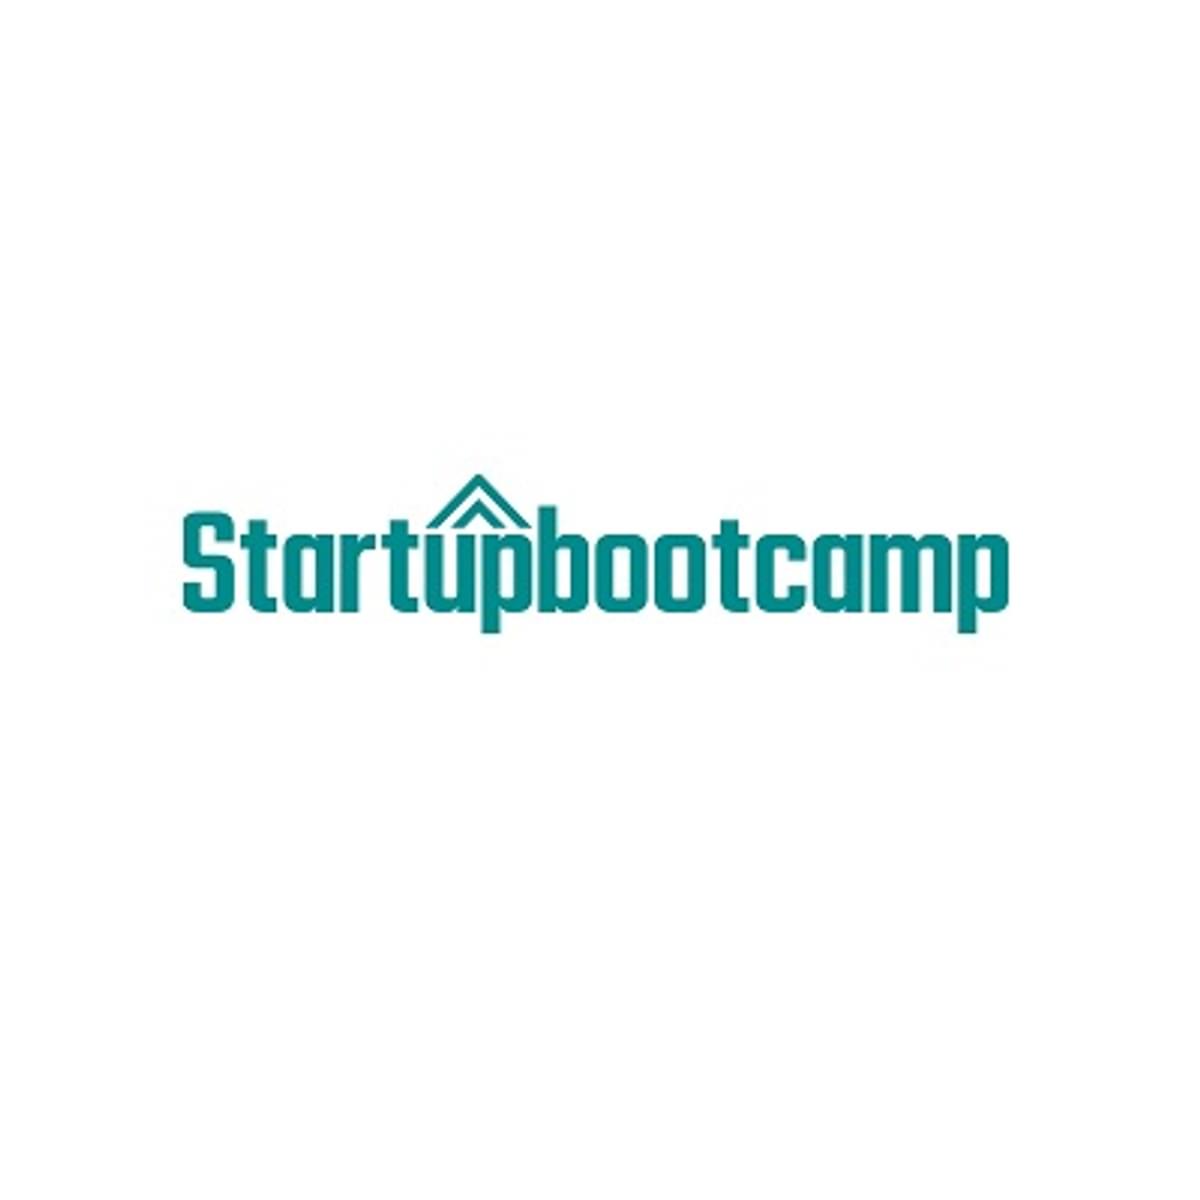 Startupbootcamp presenteert elf startups aan FinTech & CyberSecurity image